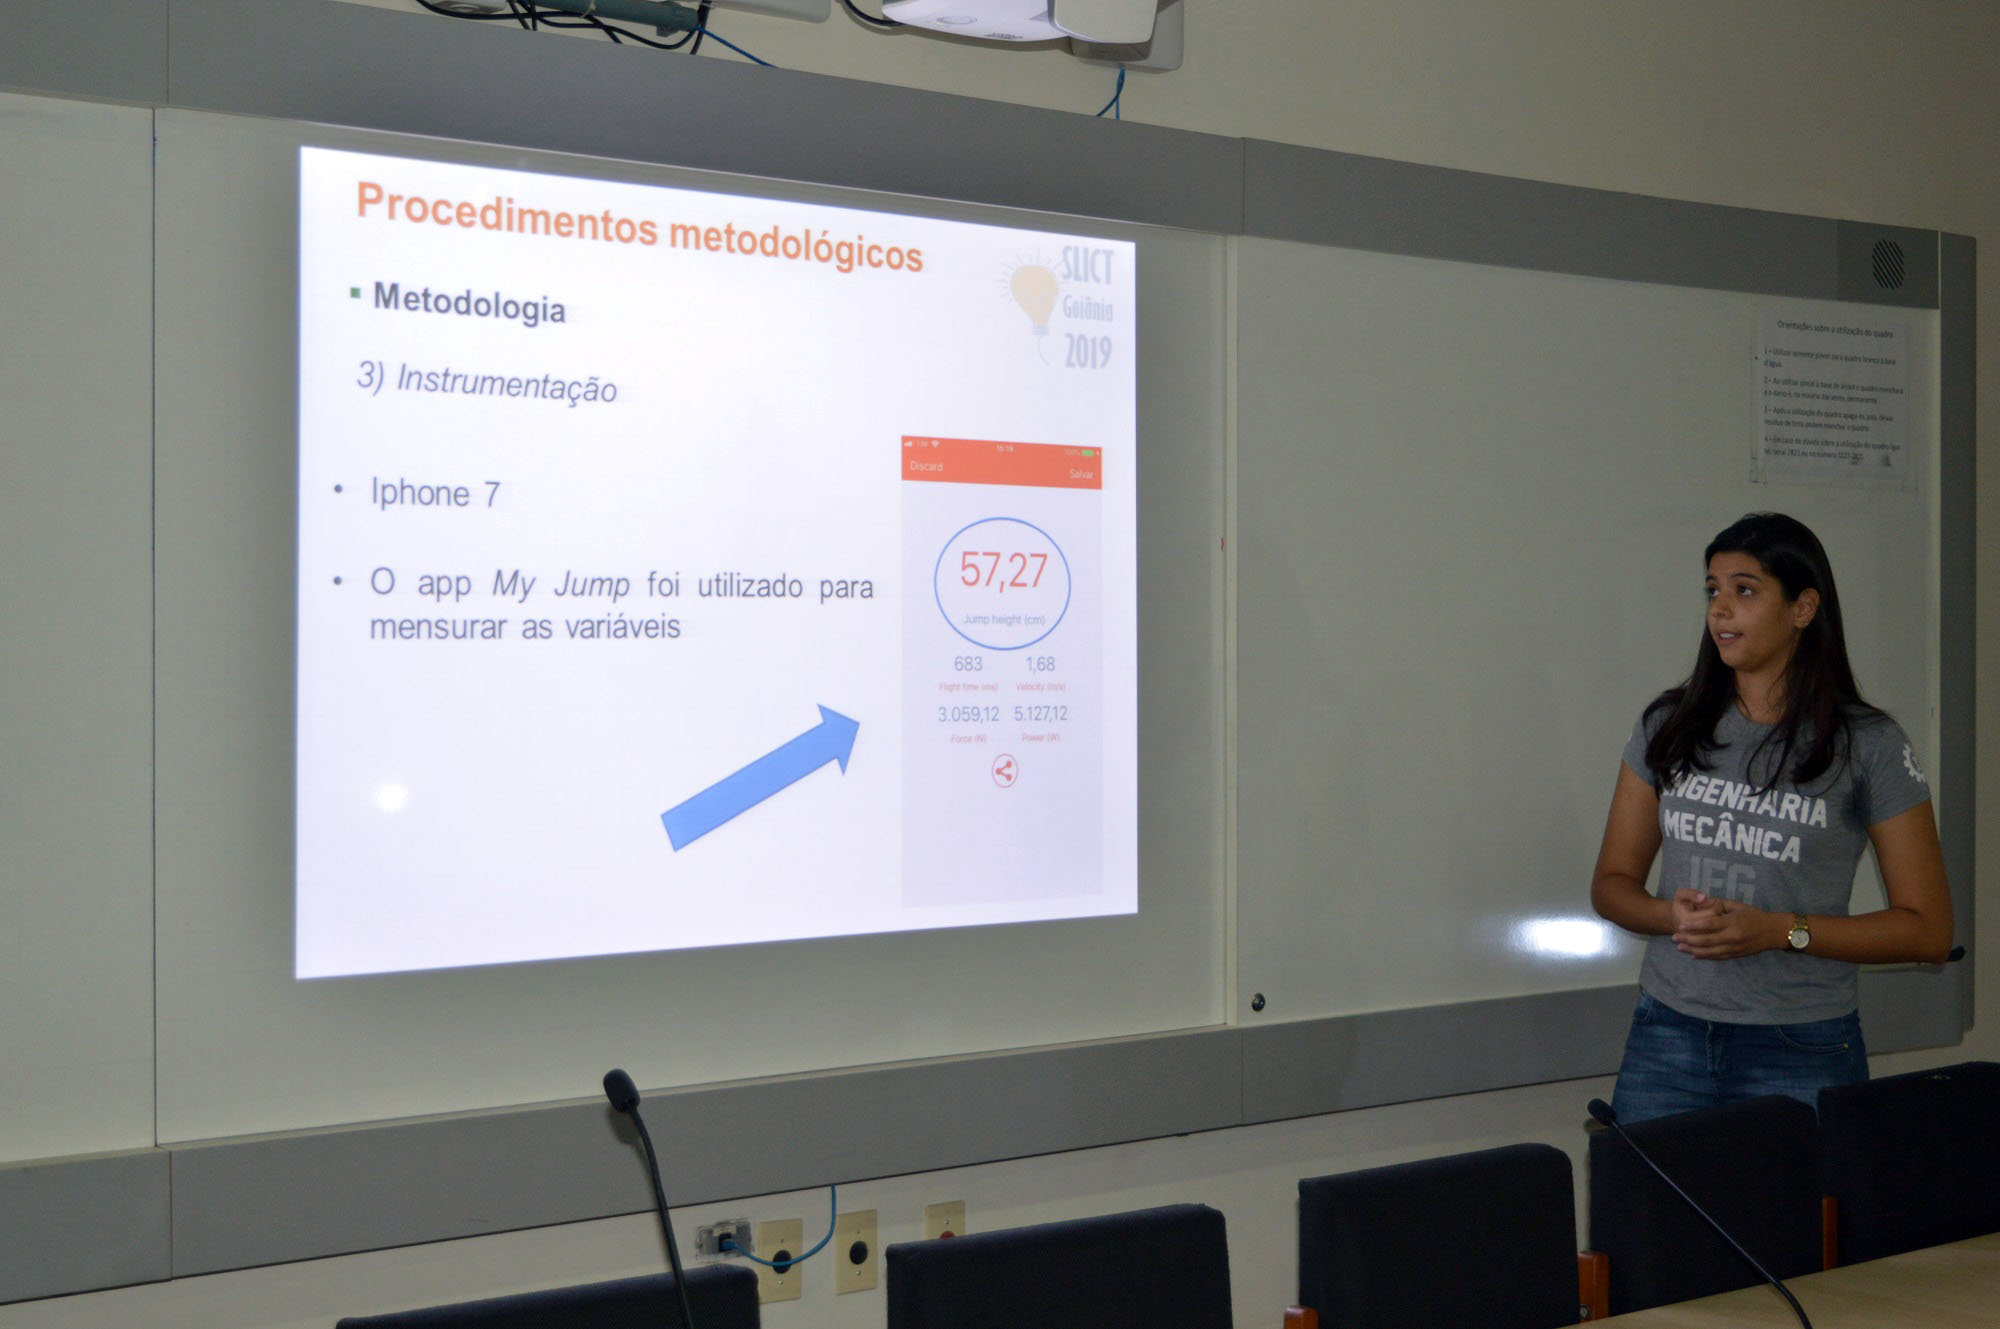 Aluna de Engenharia Mecânica, Layane Alves, apresentou na sessão oral a pesquisa de título: Análise biomecânica da técnica de bloqueio em jovens atletas de voleibol.